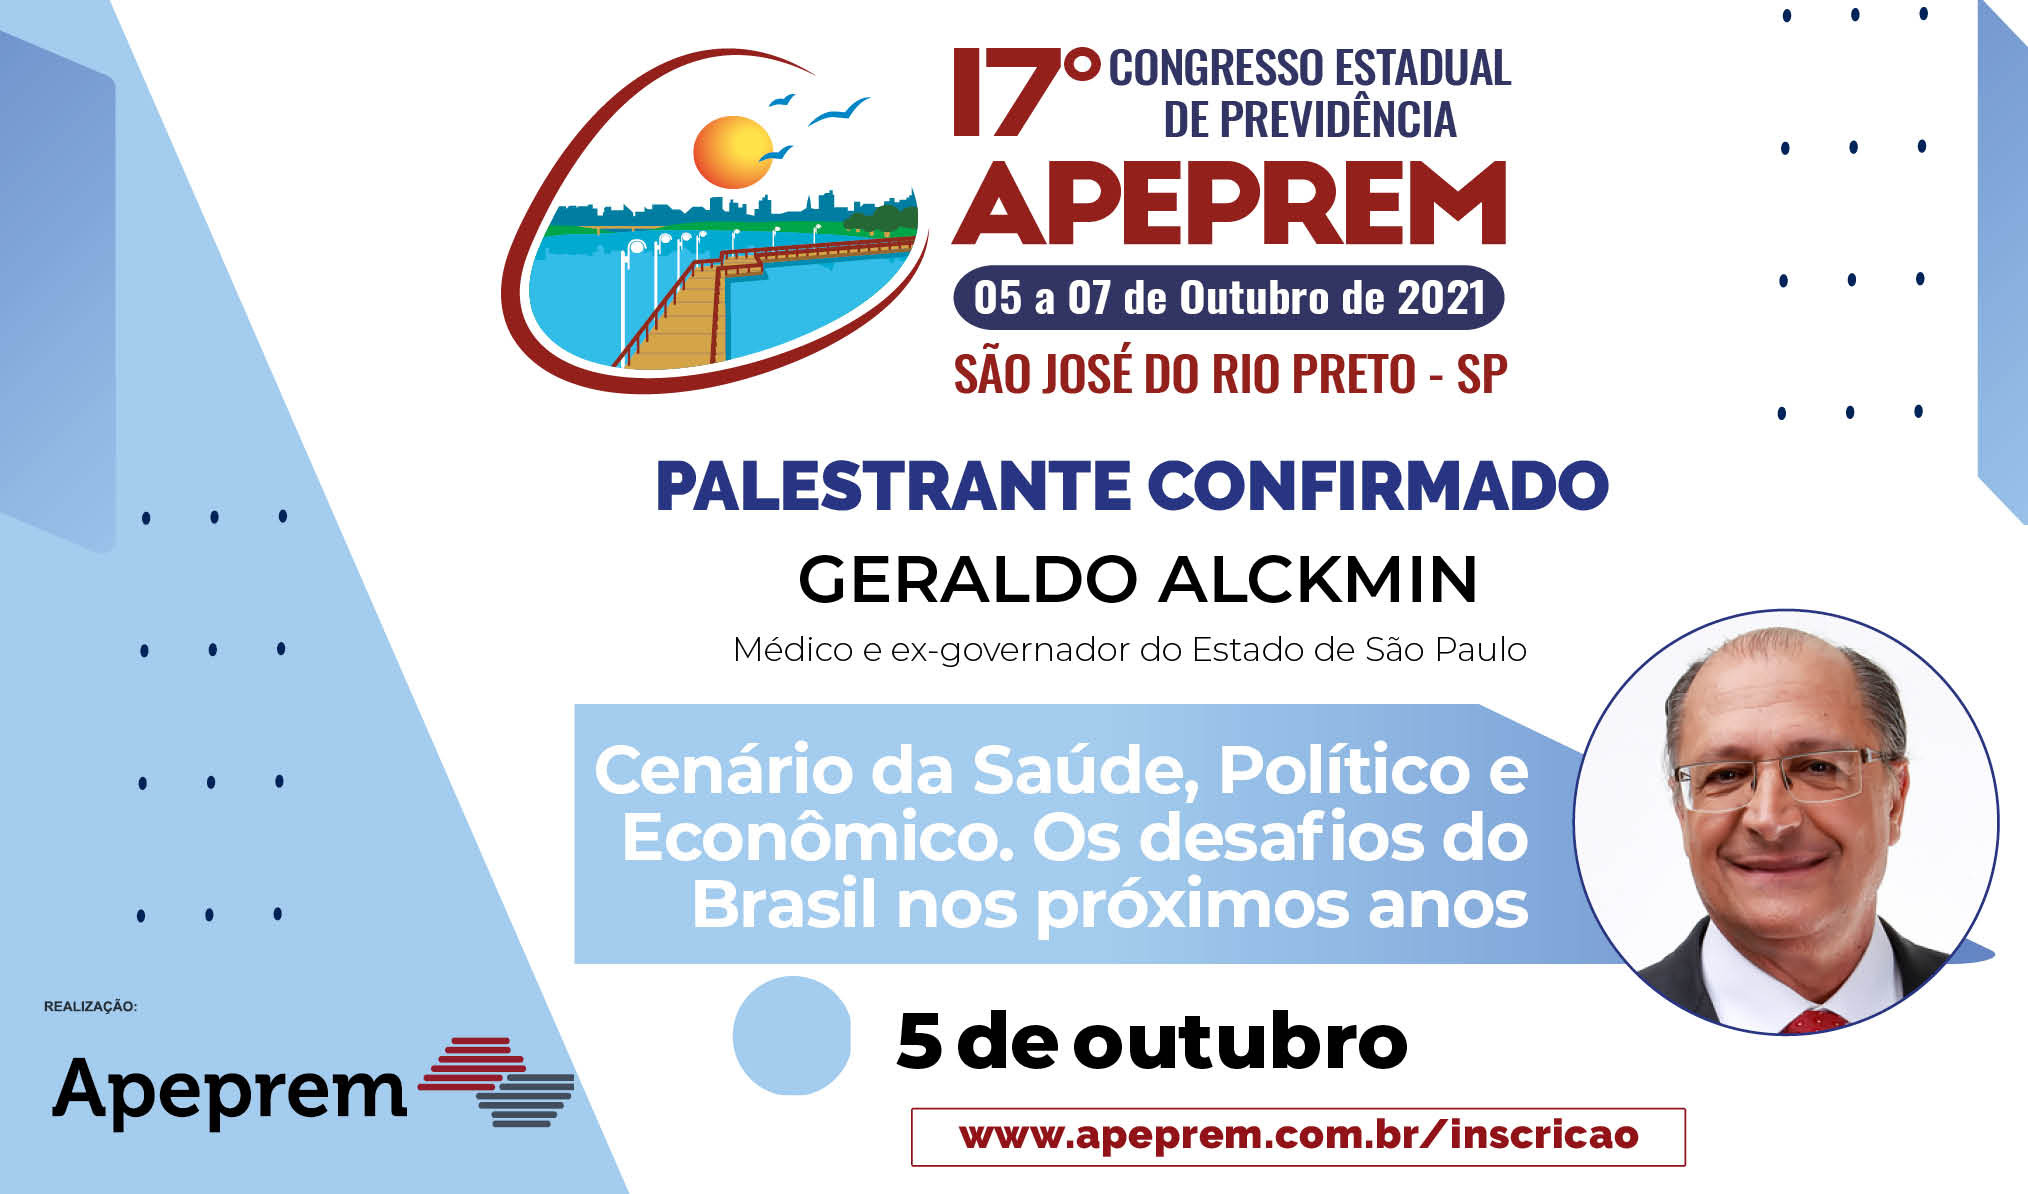 Palestrante confirmado: Geraldo Alckmin